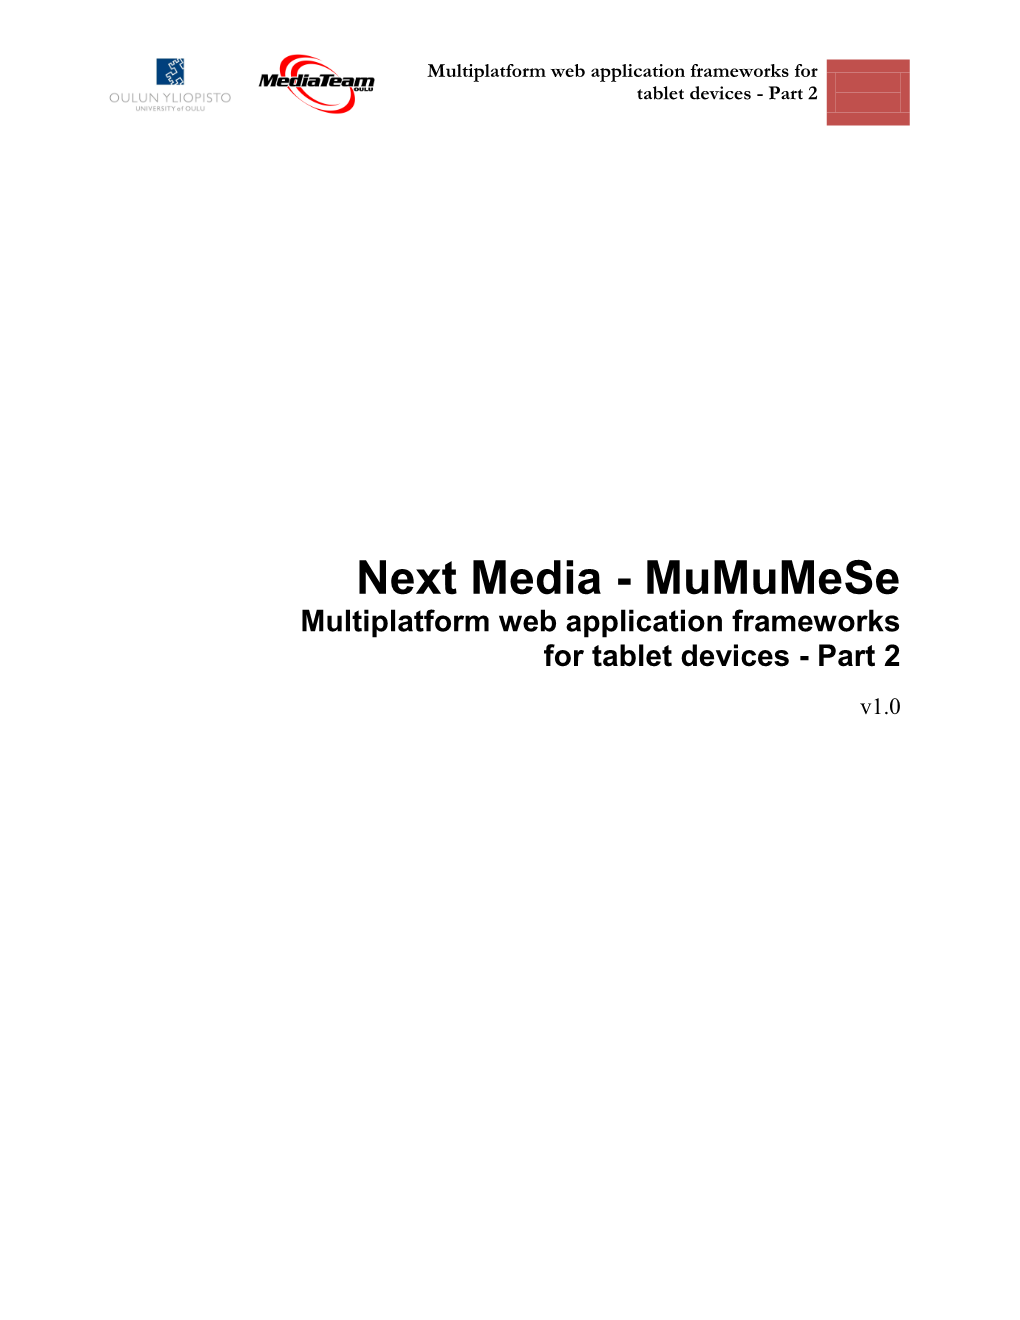 Multiplatform Web Application Frameworks for Tablet Devices - Part 2